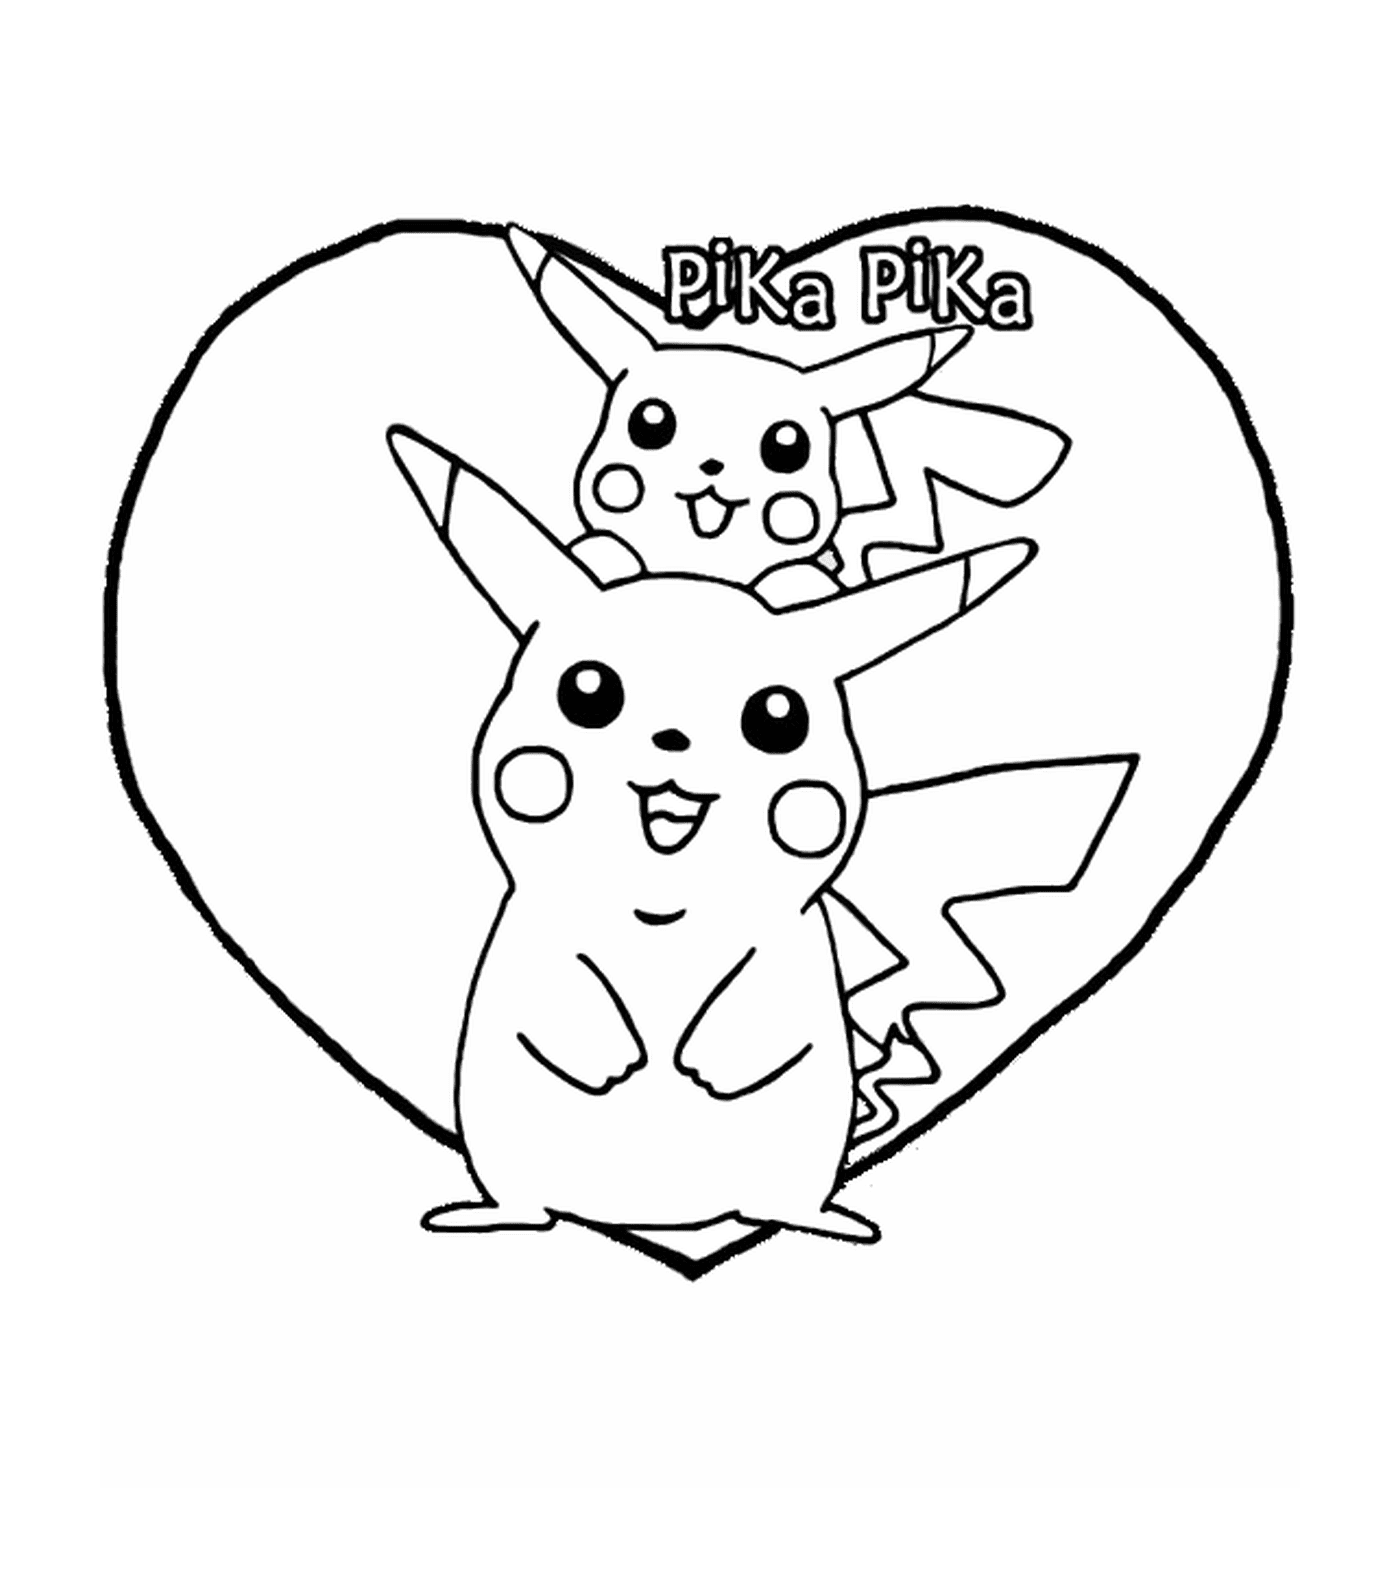  Pikachu, corazón adorable 